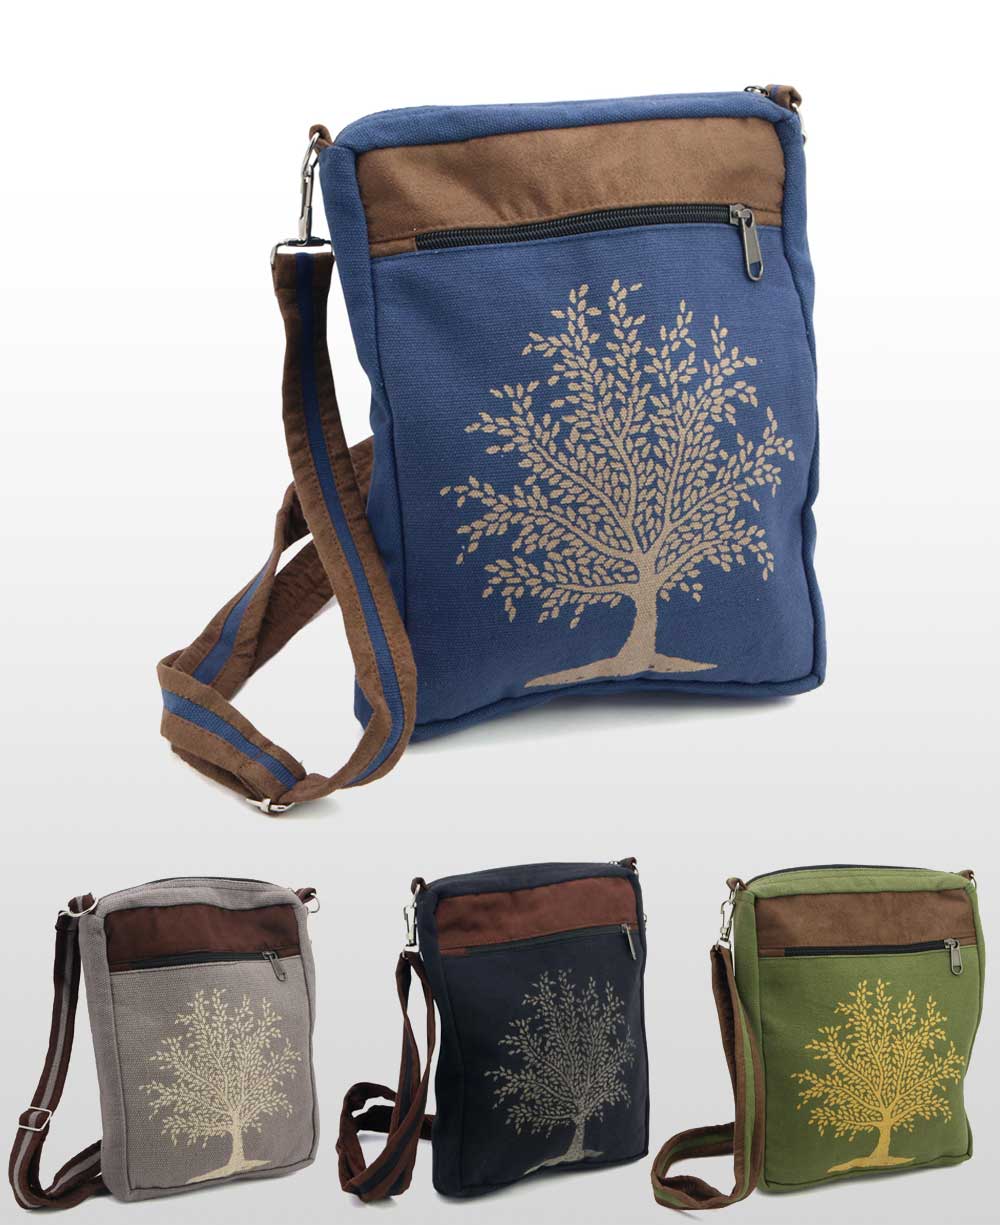 Tree of Life Art Bag Colorful Hobo Bag Purse Hippie Bag 